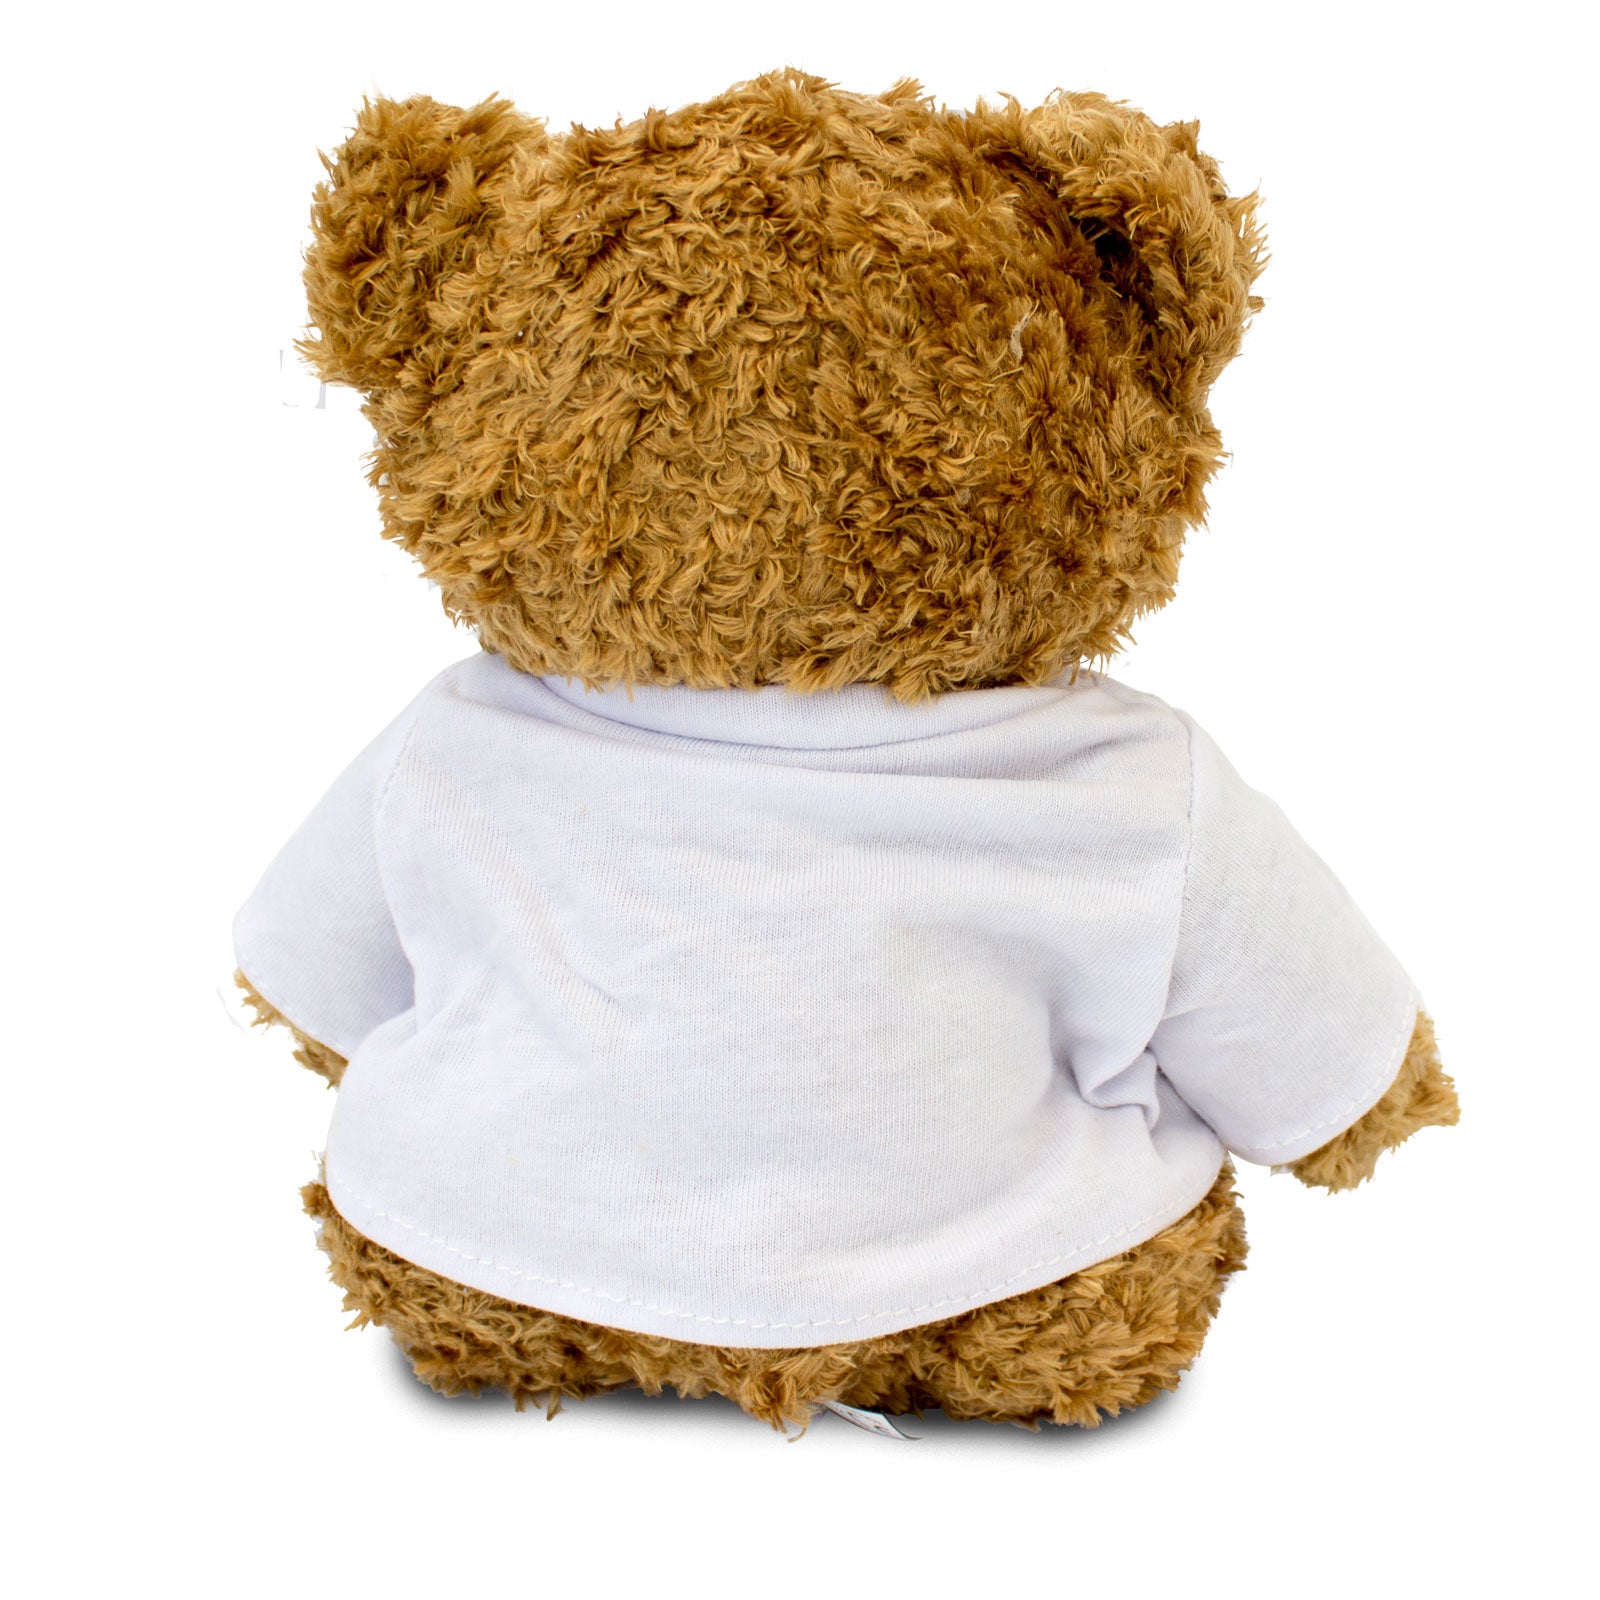 Get Well Soon Freda - Teddy Bear